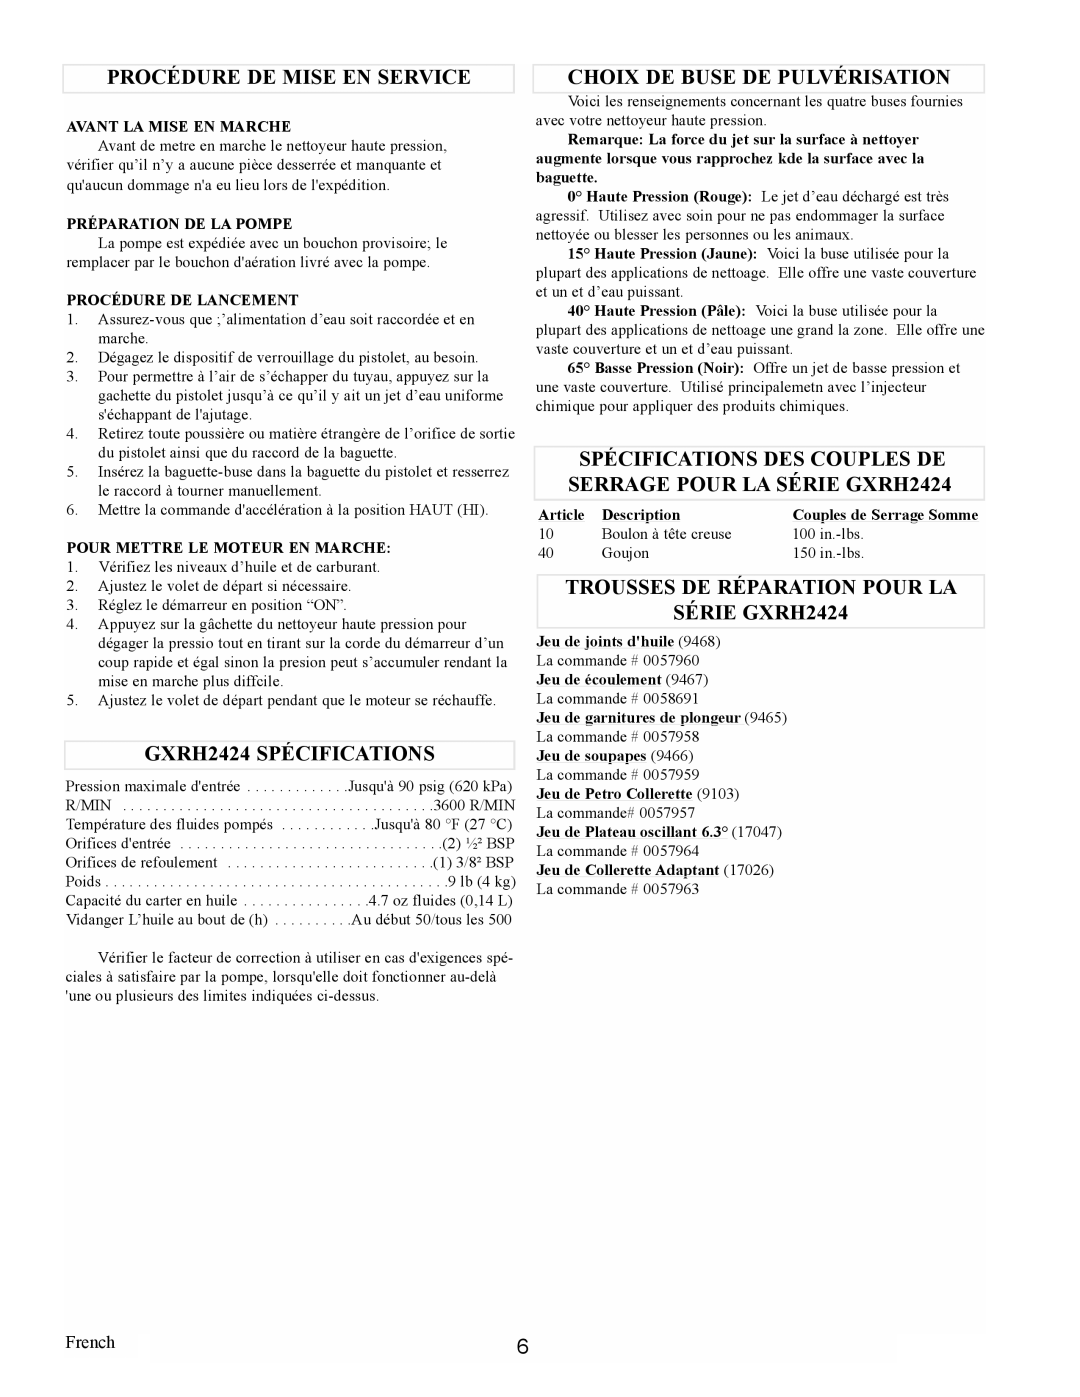 Coleman PW0912400.02 manual Procédure De Mise En Service, GXRH2424 SPÉCIFICATIONS, Choix De Buse De Pulvérisation, French 